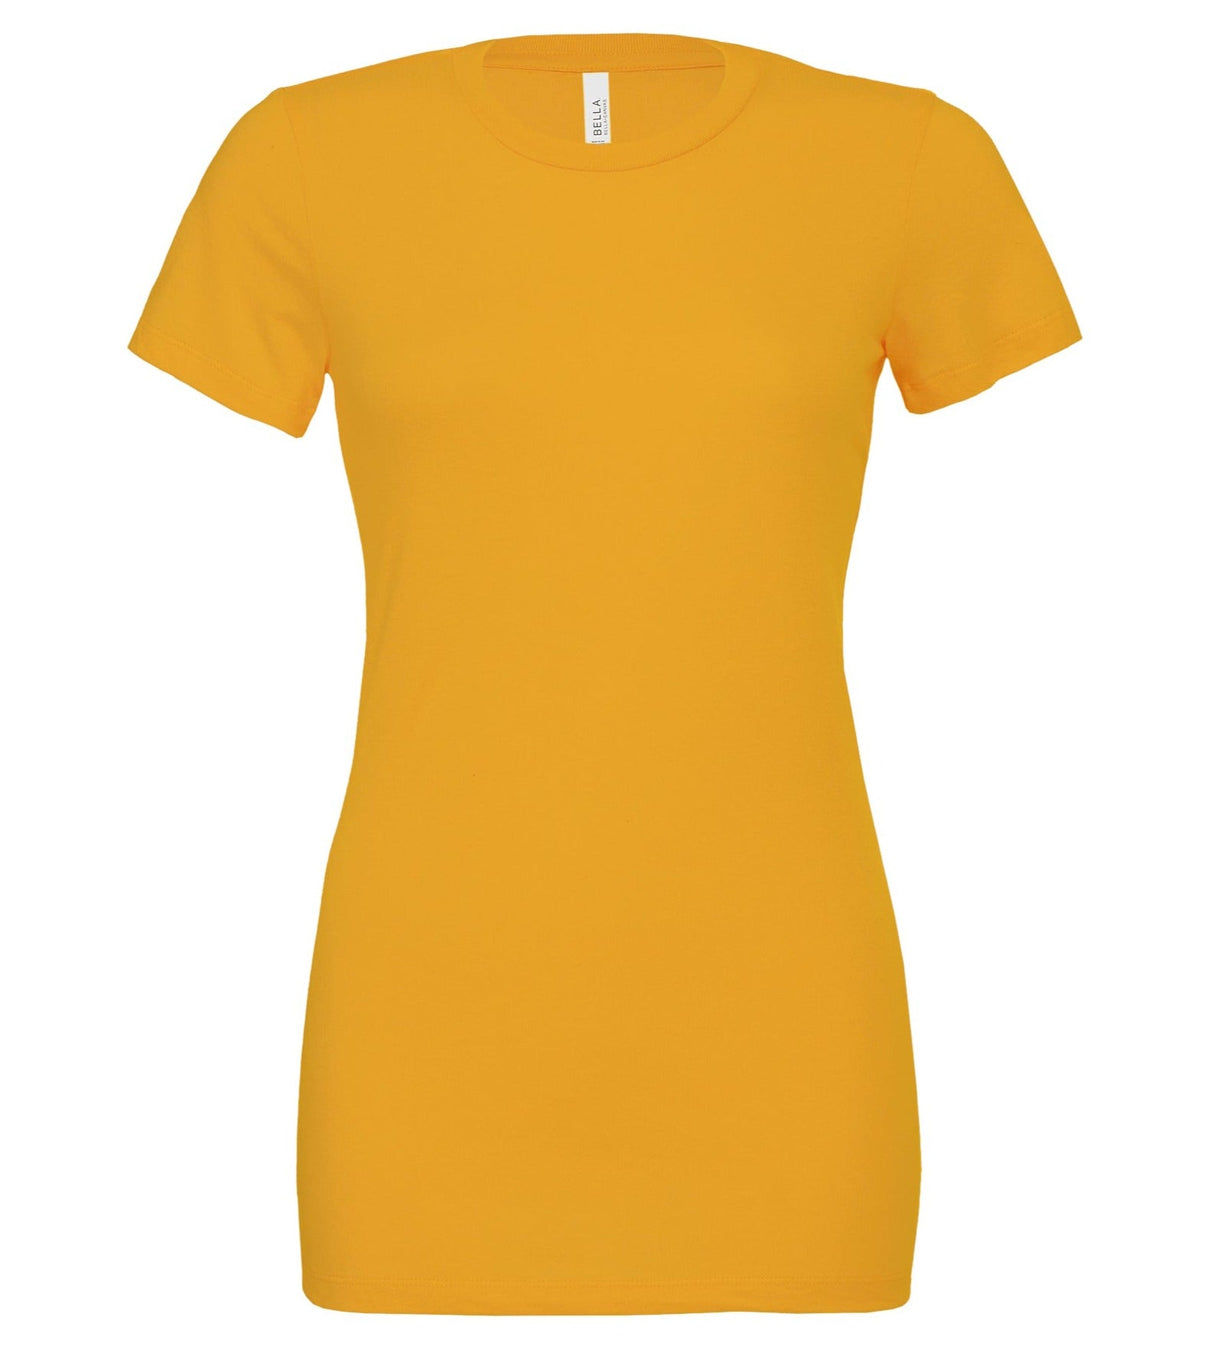 Bella Canvas Women's Relaxed Jersey Short Sleeve Tee - Mustard